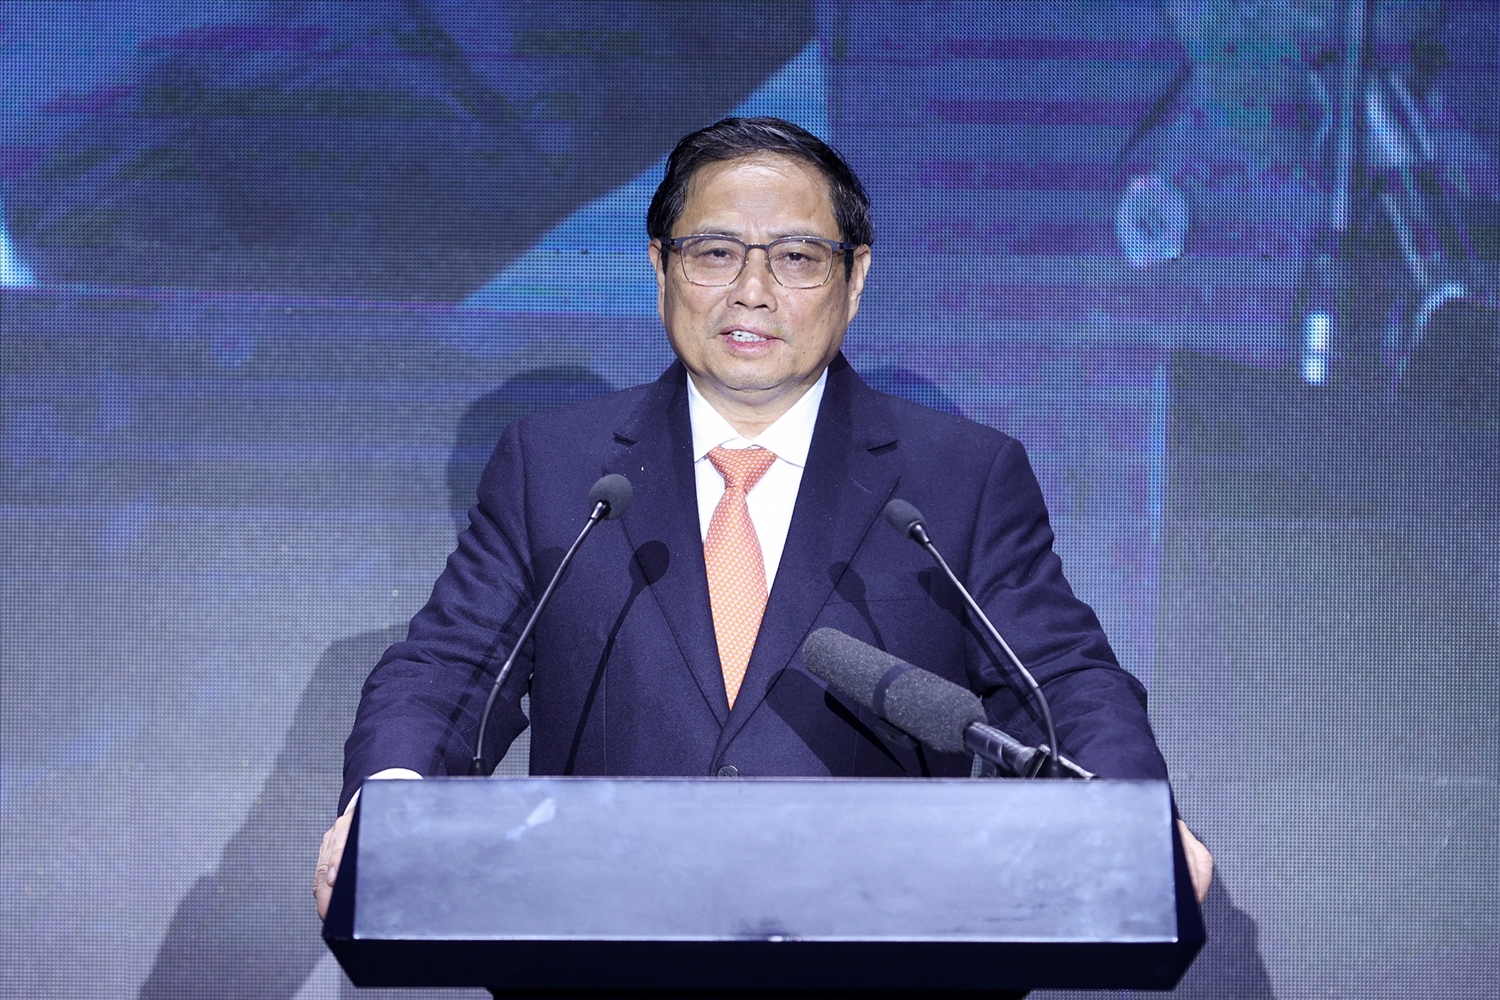 Thủ tướng mong muốn Samsung tiếp tục mở rộng các hoạt động đầu tư, kinh doanh; coi Việt Nam là cứ điểm quan trọng nhất, chiến lược toàn cầu, toàn diện hơn nữa về sản xuất, nghiên cứu-phát triển các sản phẩm chủ lực ra thị trường quốc tế - Ảnh: VGP/Nhật Bắc